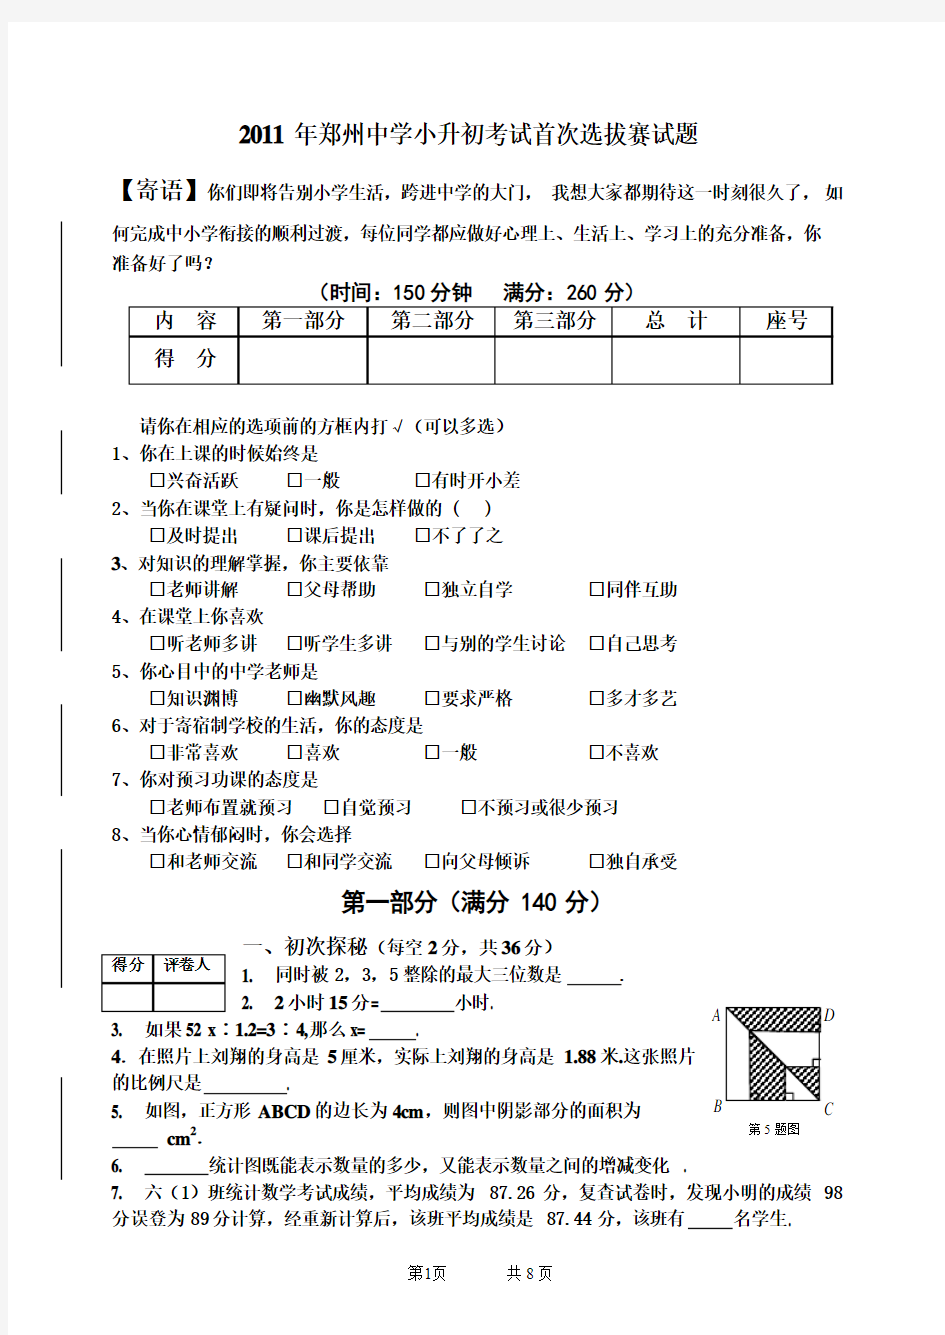 2011年郑州中学小升初考试首次选拔赛试题